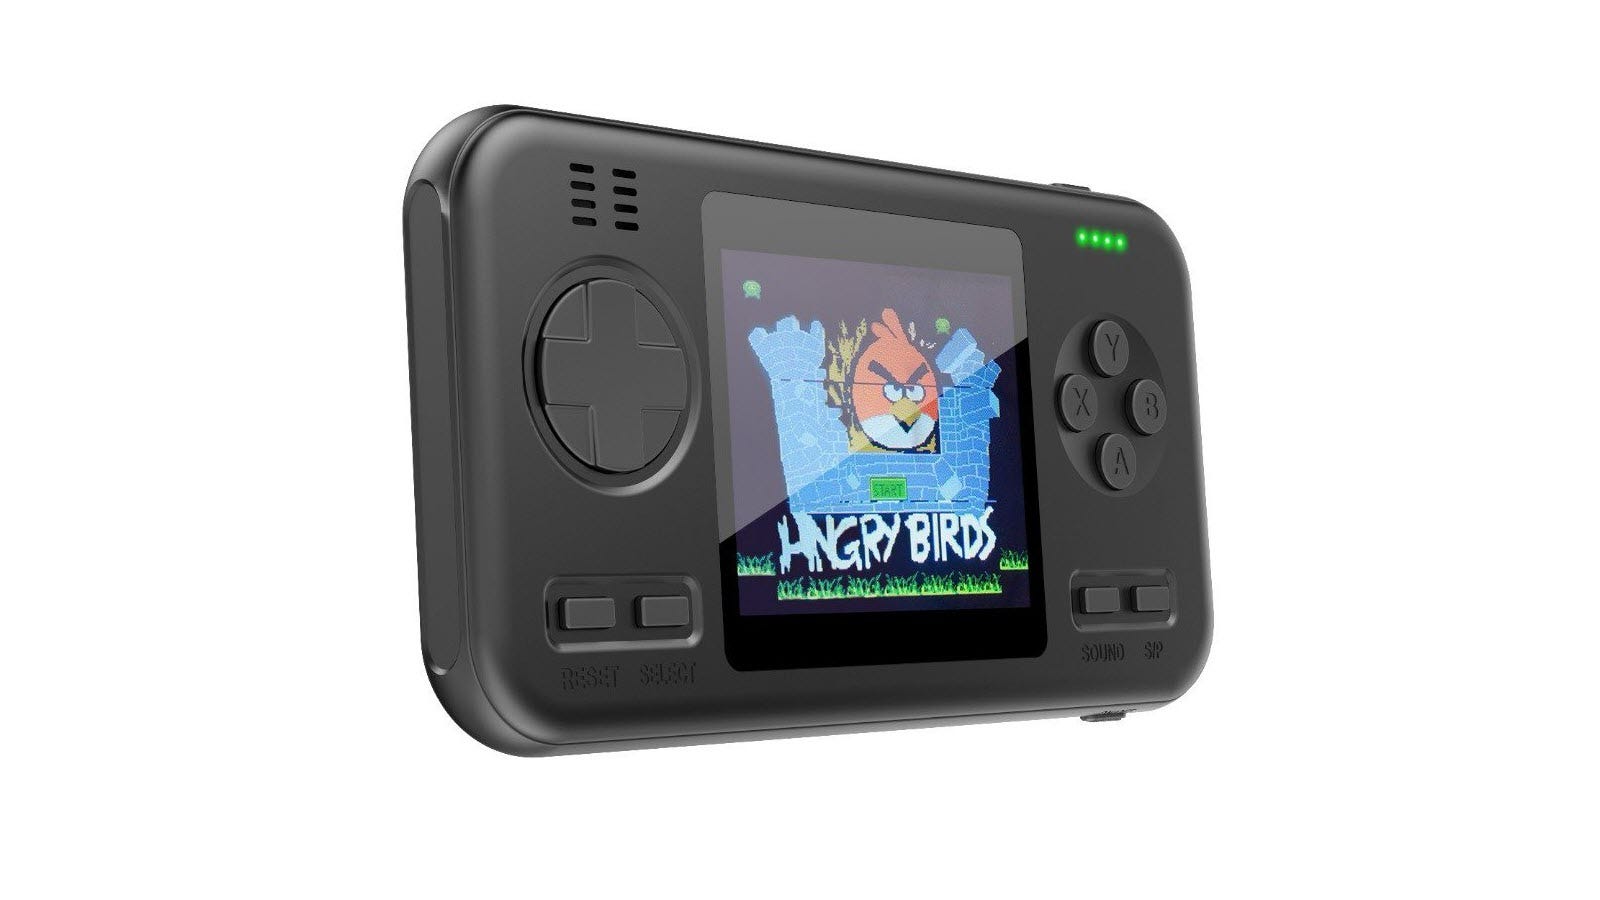 Ngân hàng điện chơi game màu đen với màn hình giật gân Angry Birds.